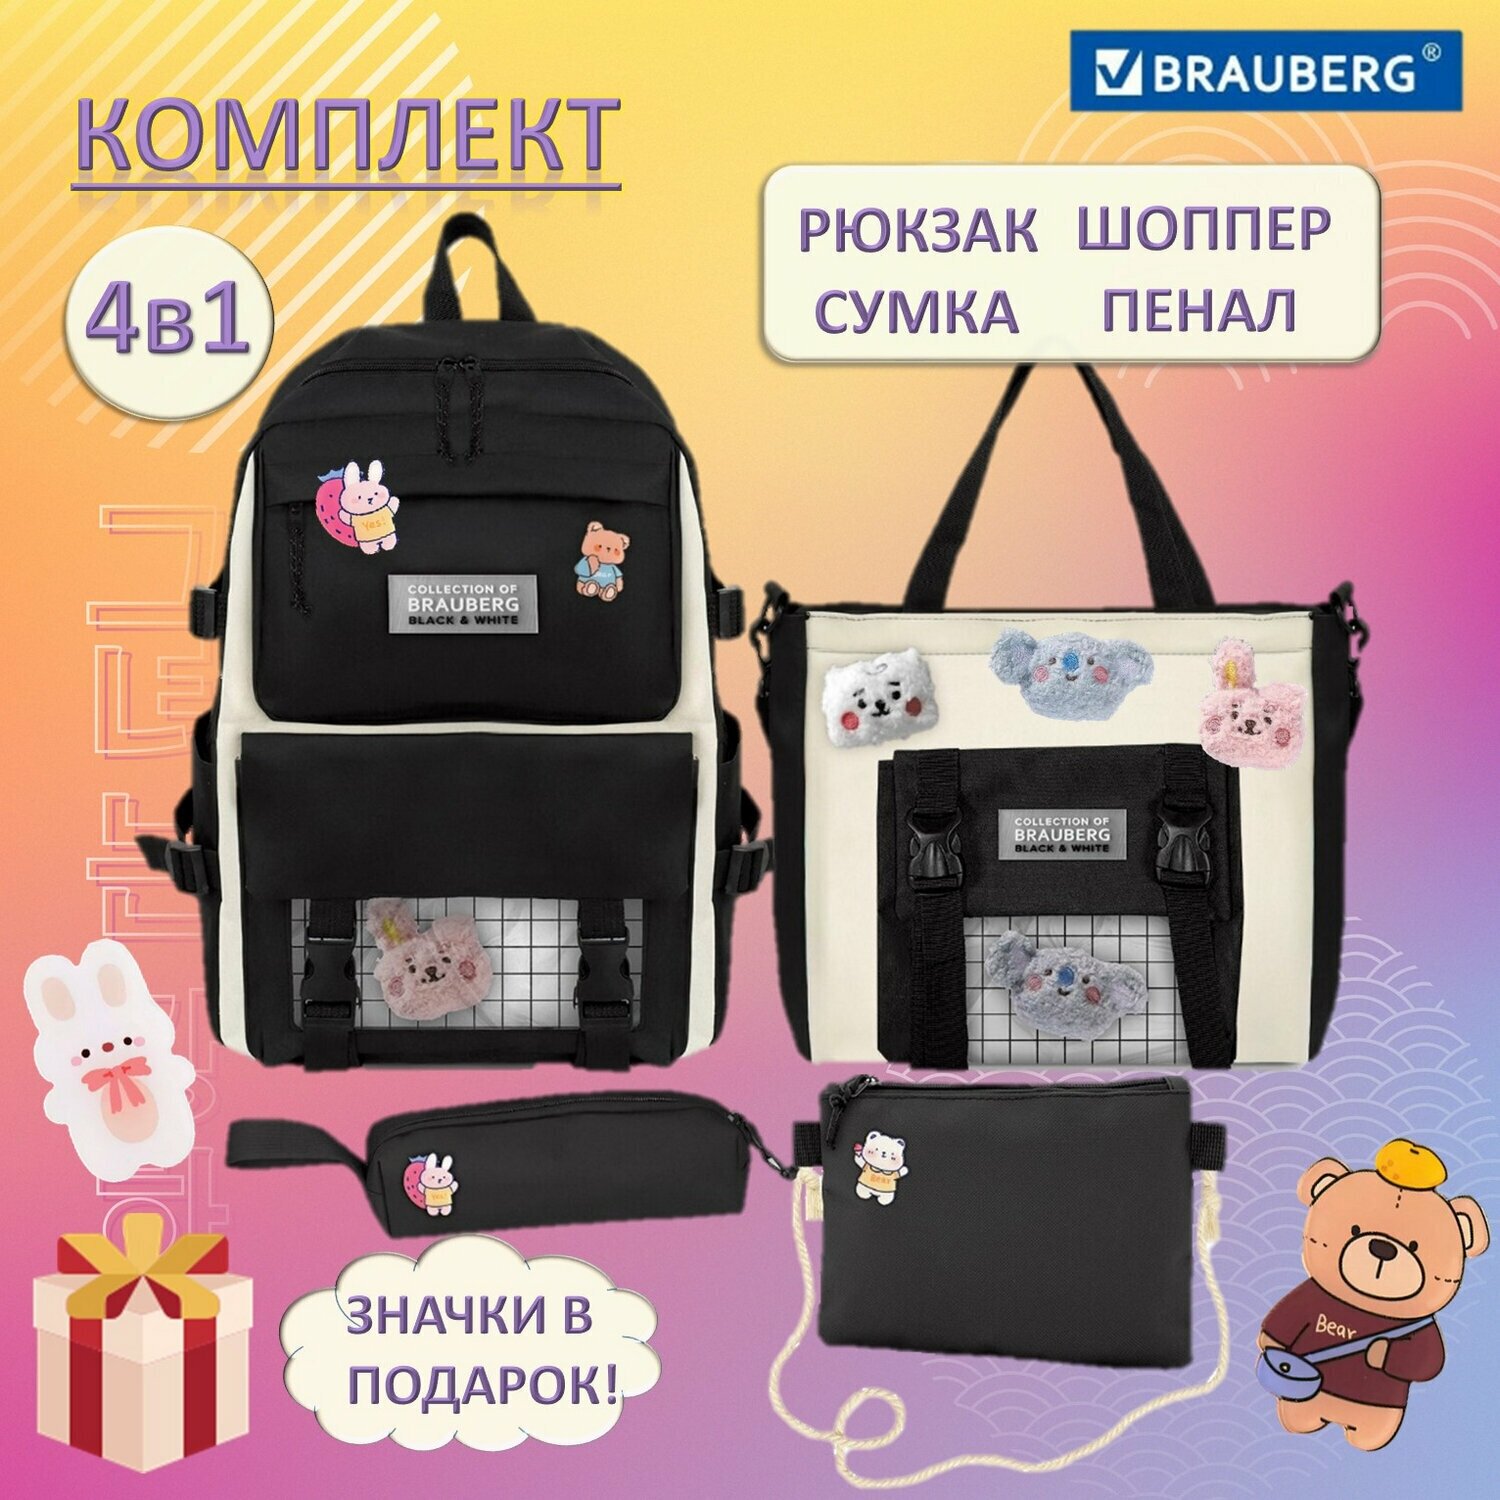 Рюкзак 4 в 1 Combo, сумка-шоппер, косметичка, пенал Brauberg - фото №13